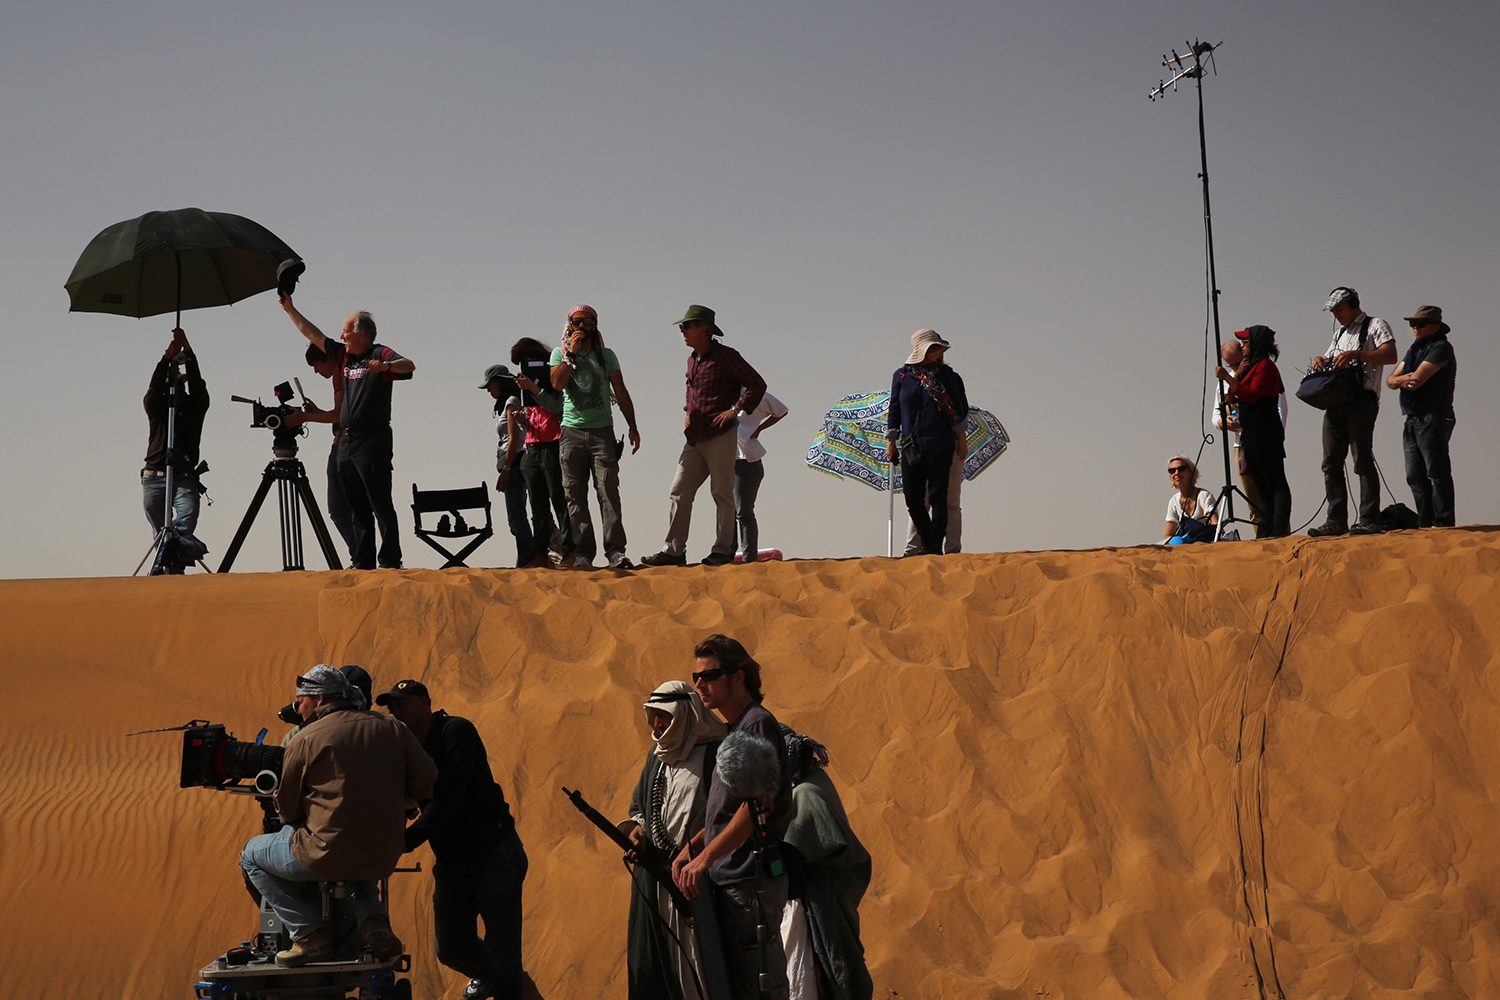 Eine große Gruppe mit Filmausrüstung steht in der Wüste, einige auf einer Düne, einige arbeiten mit Kameras, andere unterhalten sich oder beobachten die Situation.